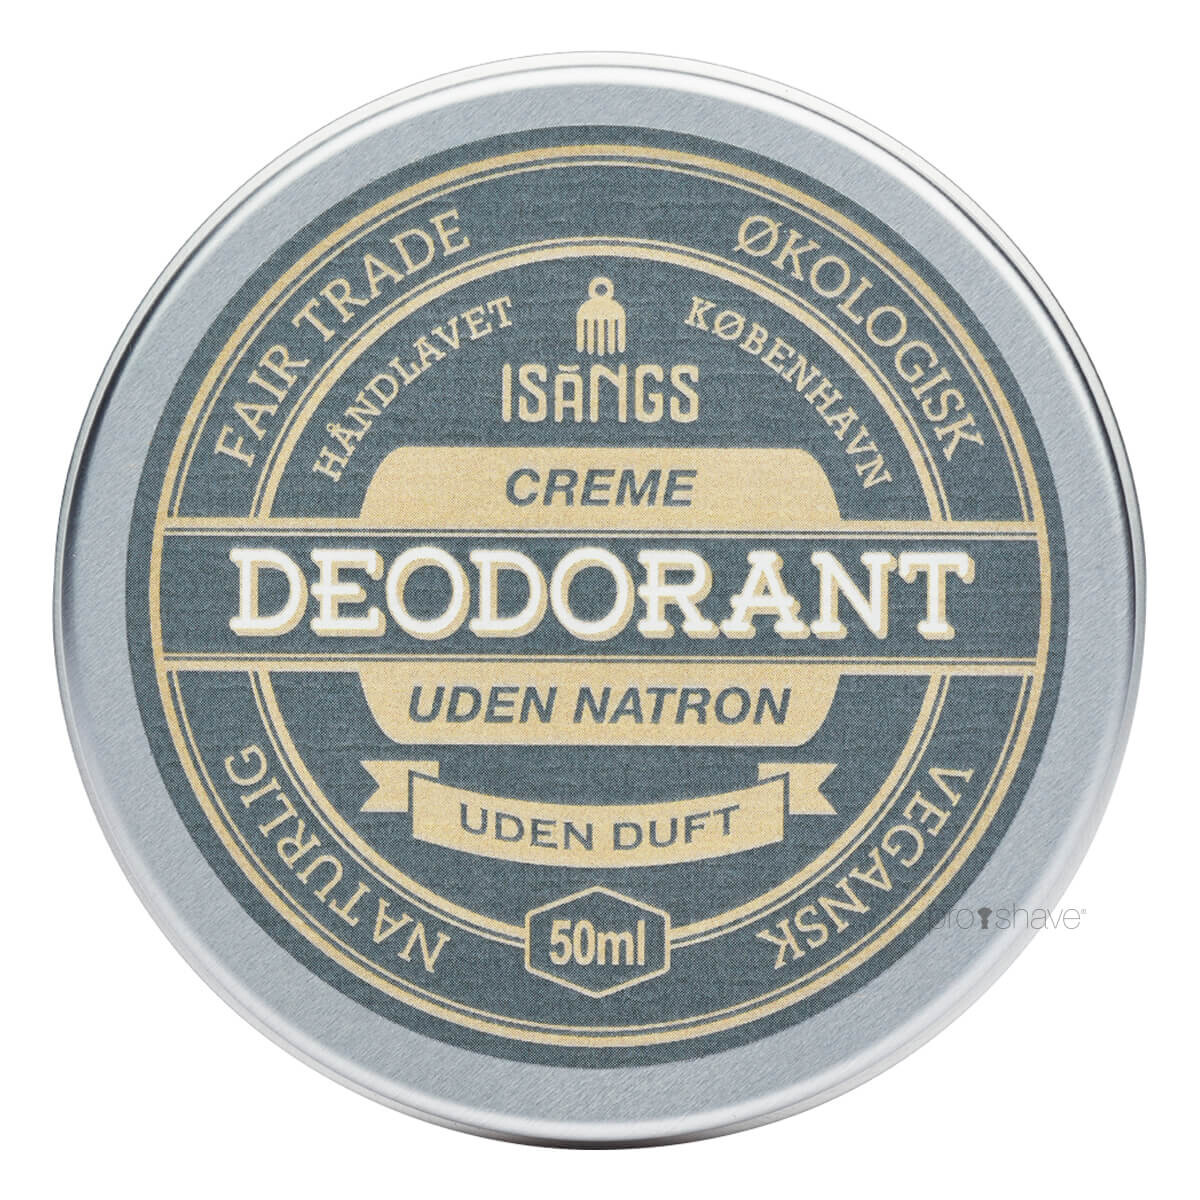 Isangs Creme Deodorant uden Natron, Uden duft, 50 ml.